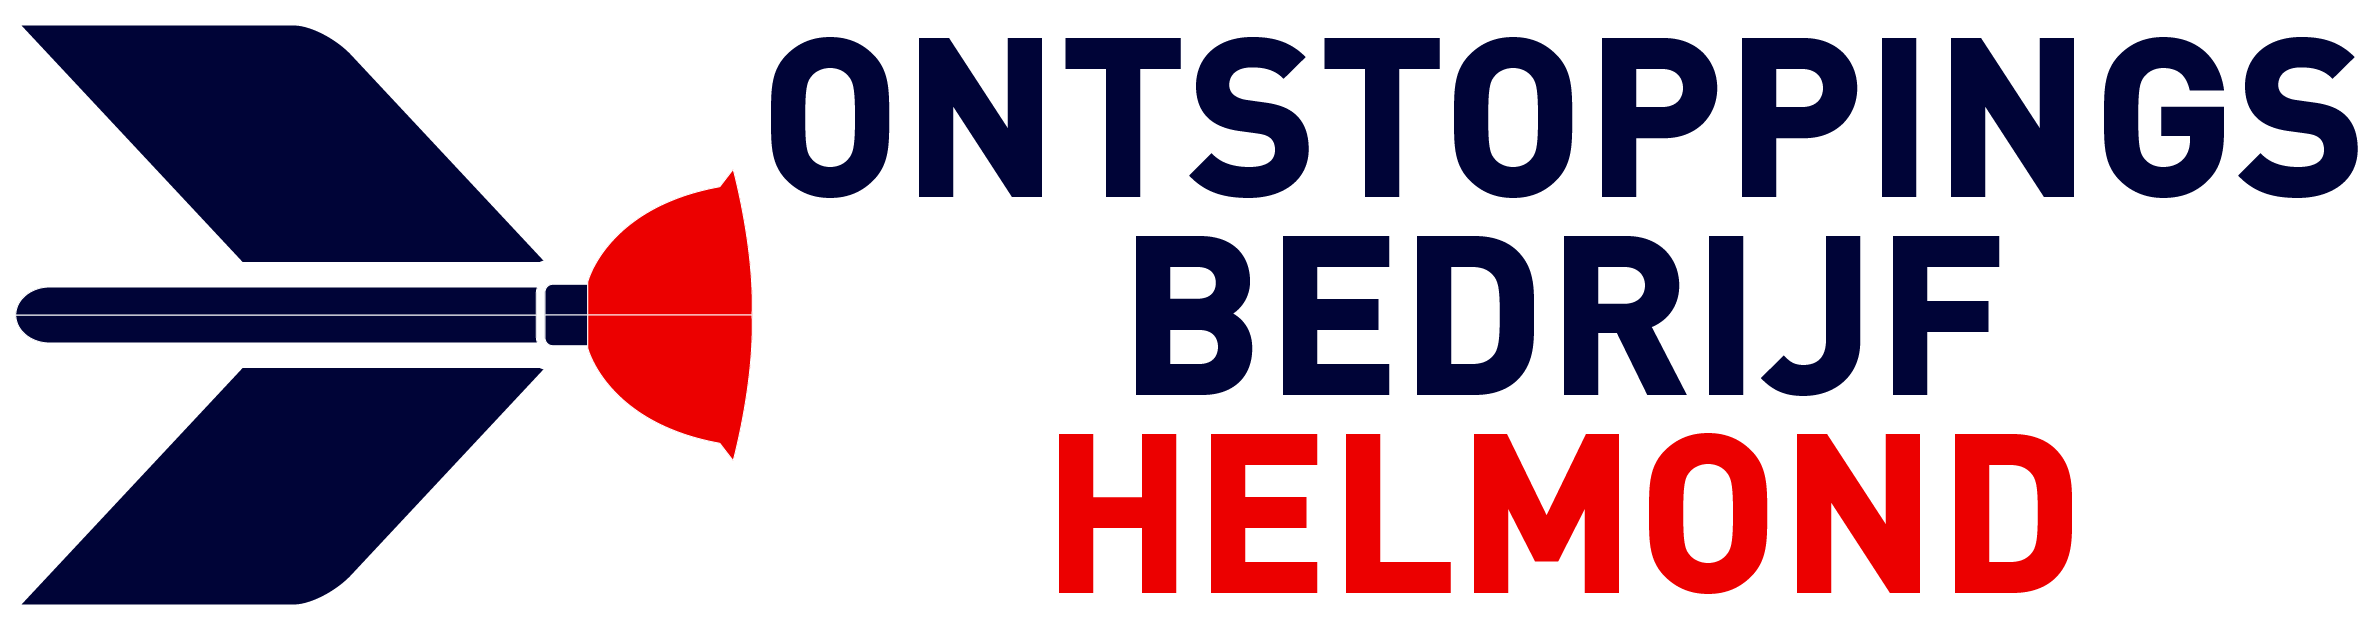 Ontstoppingsbedrijf Helmond logo